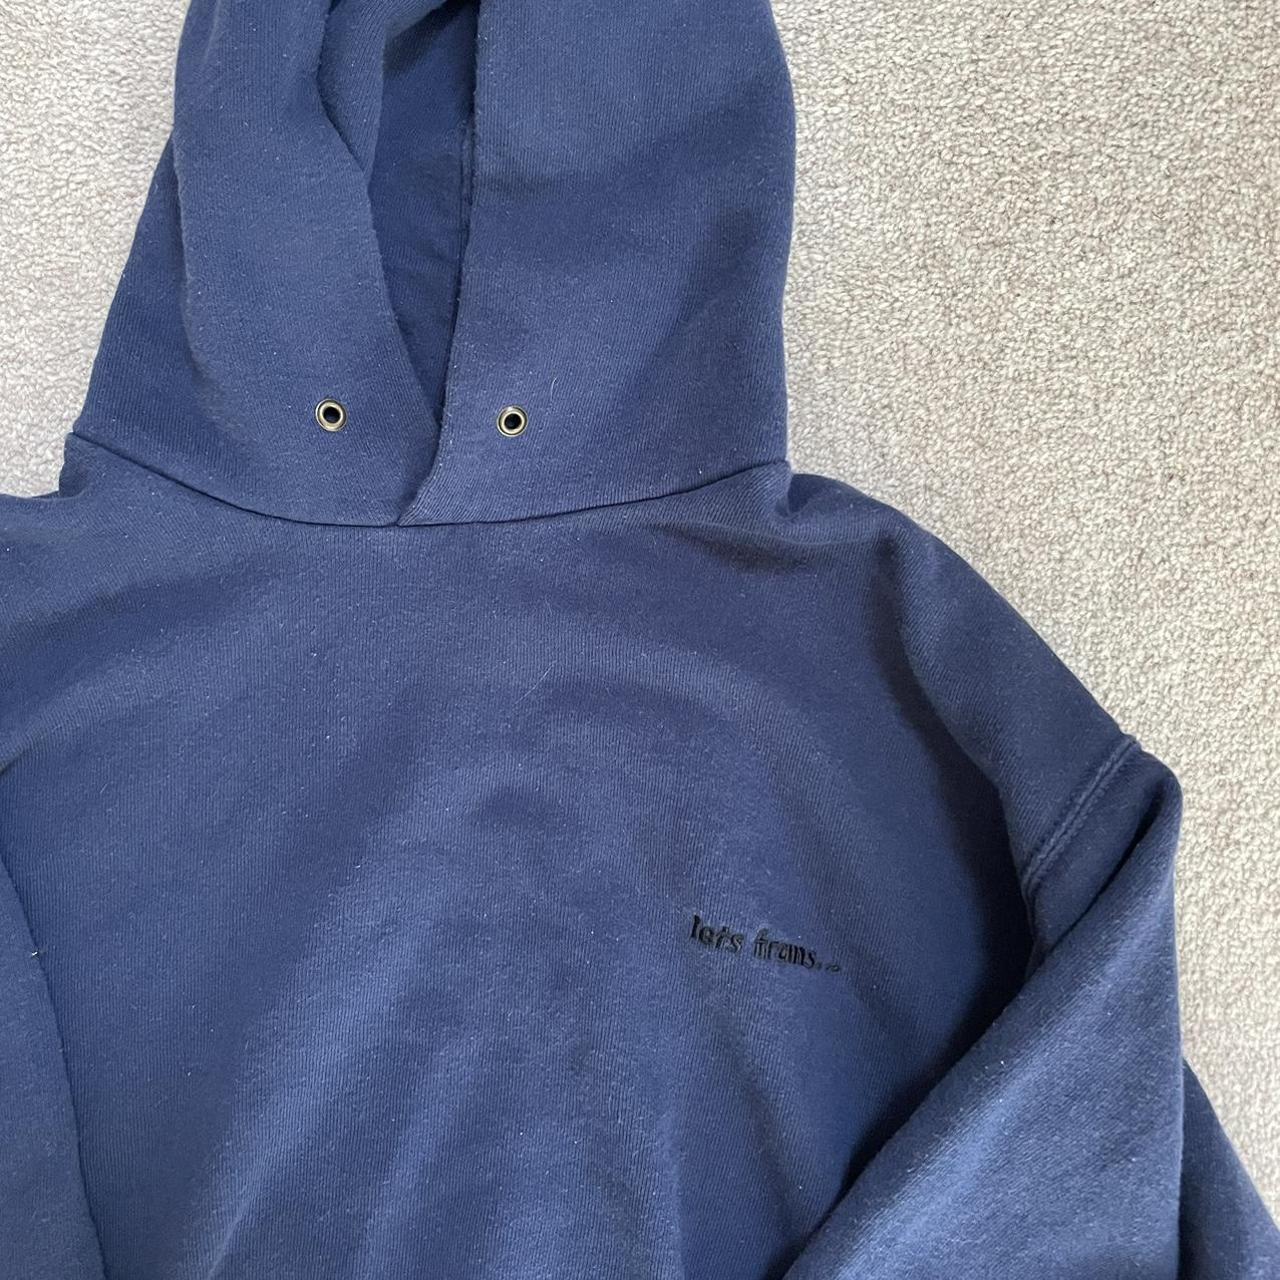 Navy IETS FRANS hoodie Size M #urbanhoodie #hoodie - Depop